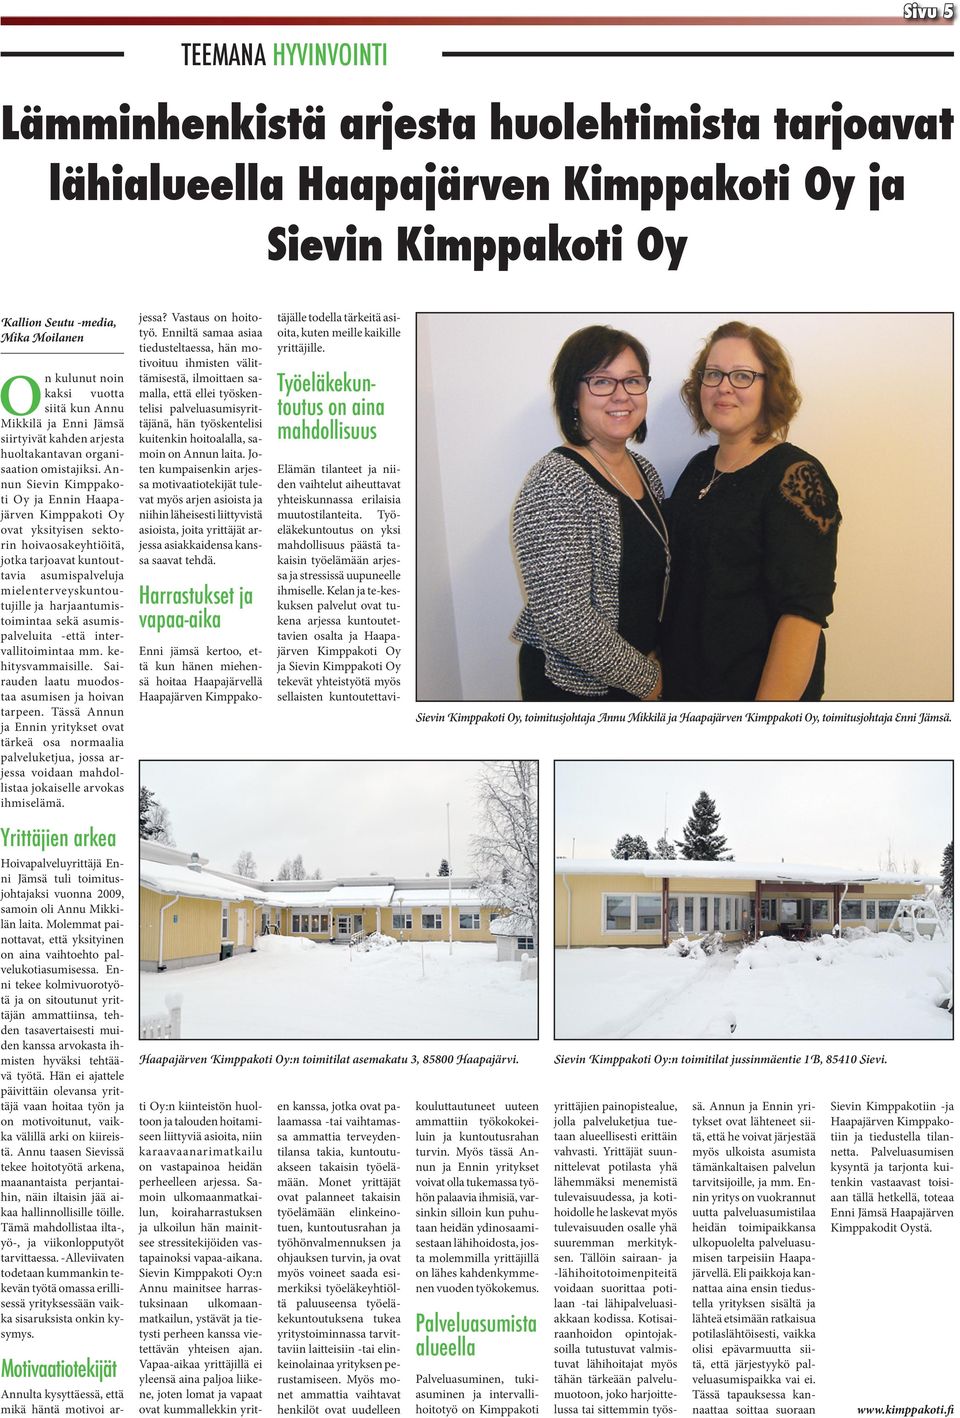 Annun Sievin Kimppakoti Oy ja Ennin Haapajärven Kimppakoti Oy ovat yksityisen sektorin hoivaosakeyhtiöitä, jotka tarjoavat kuntouttavia asumispalveluja mielenterveyskuntoutujille ja